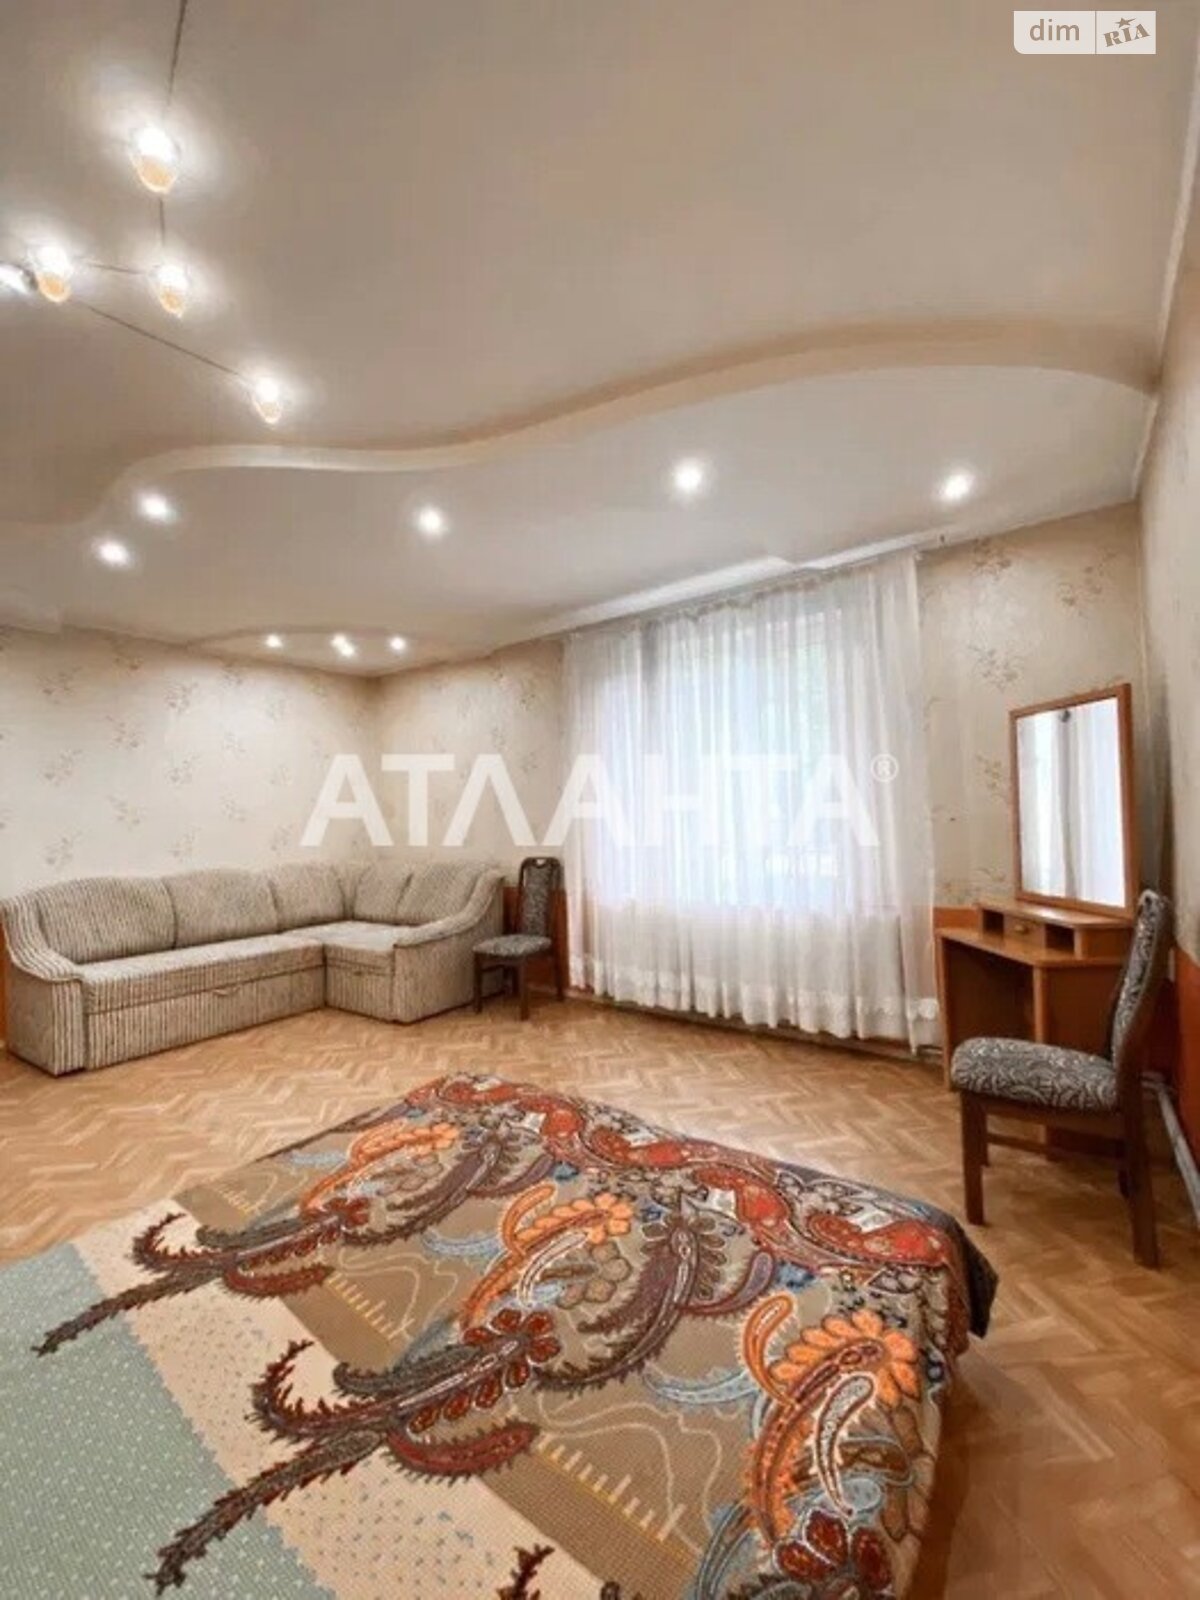 Продажа части дома в Одессе, улица Береговая, район Таирова, 3 комнаты фото 1